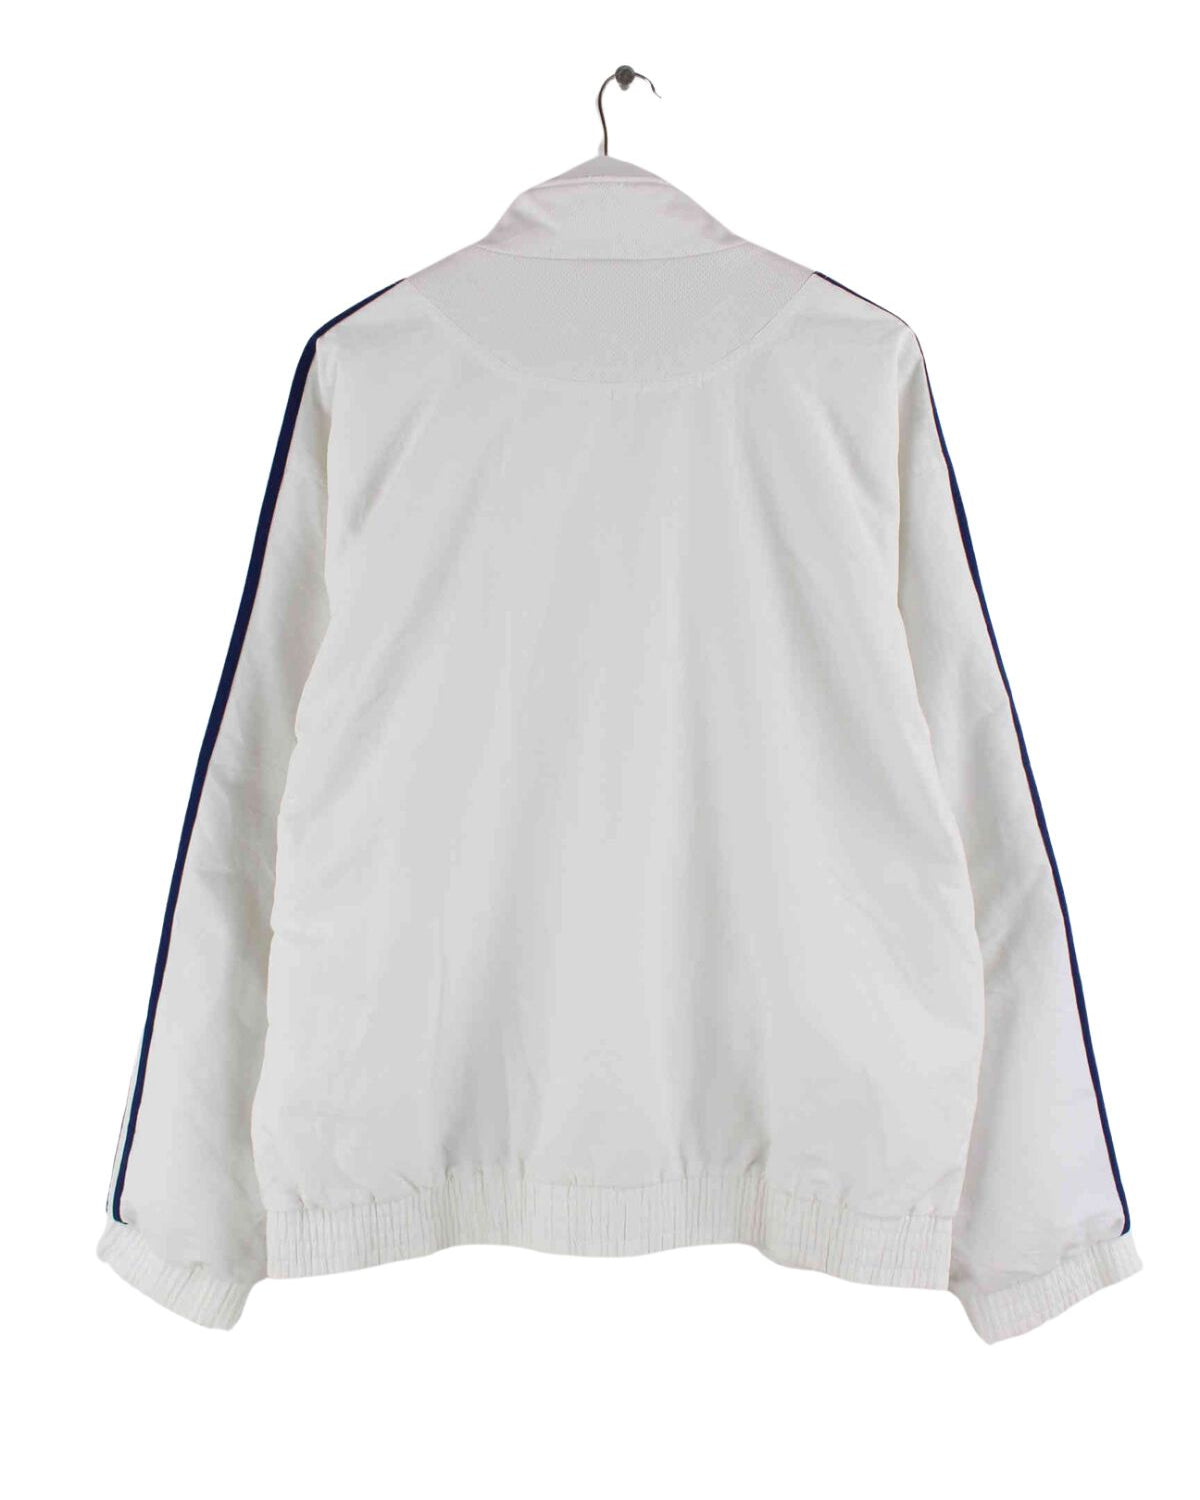 Adidas 90s Vintage 3-Stripes Trainingsjacke Weiß L (back image)